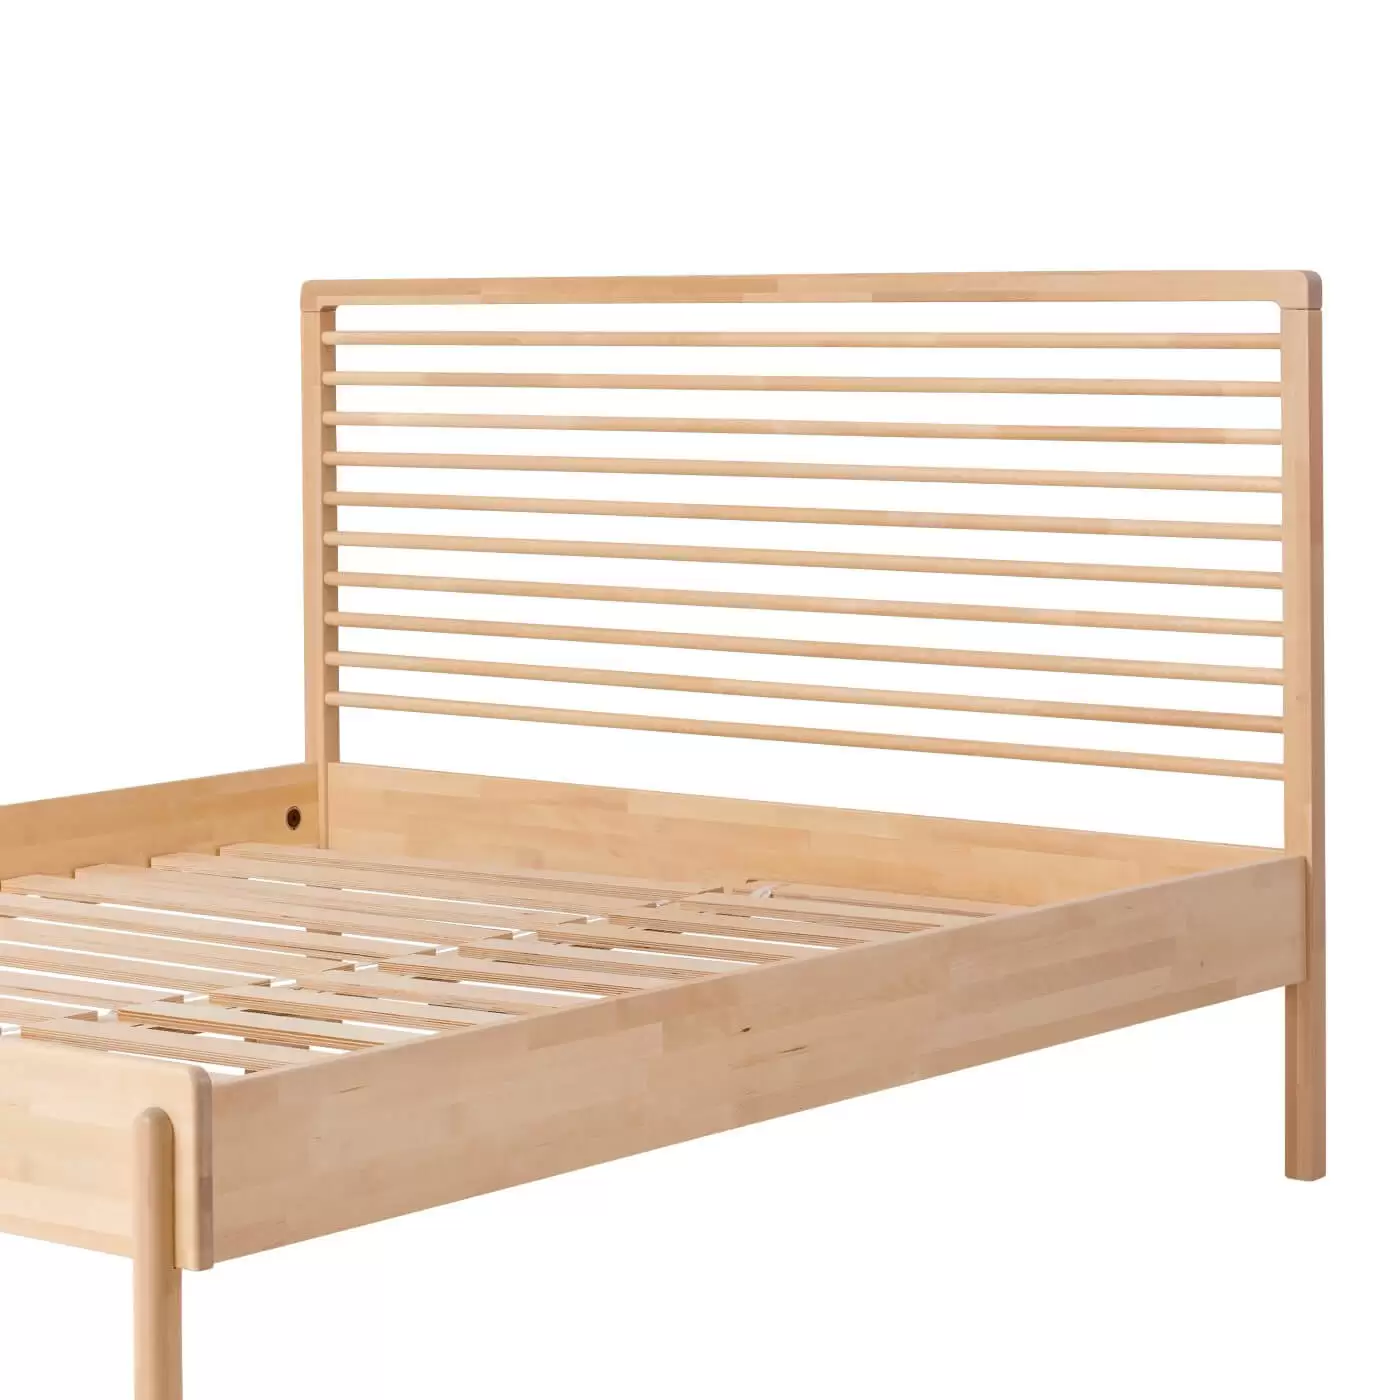 Łóżko design LENNU. Fragment z widocznym całym wysokim ażurowym zagłówkiem łóżka bez materaca dwuosobowego 160x200 z drewna brzozy skandynawskiej. Nowoczesny design